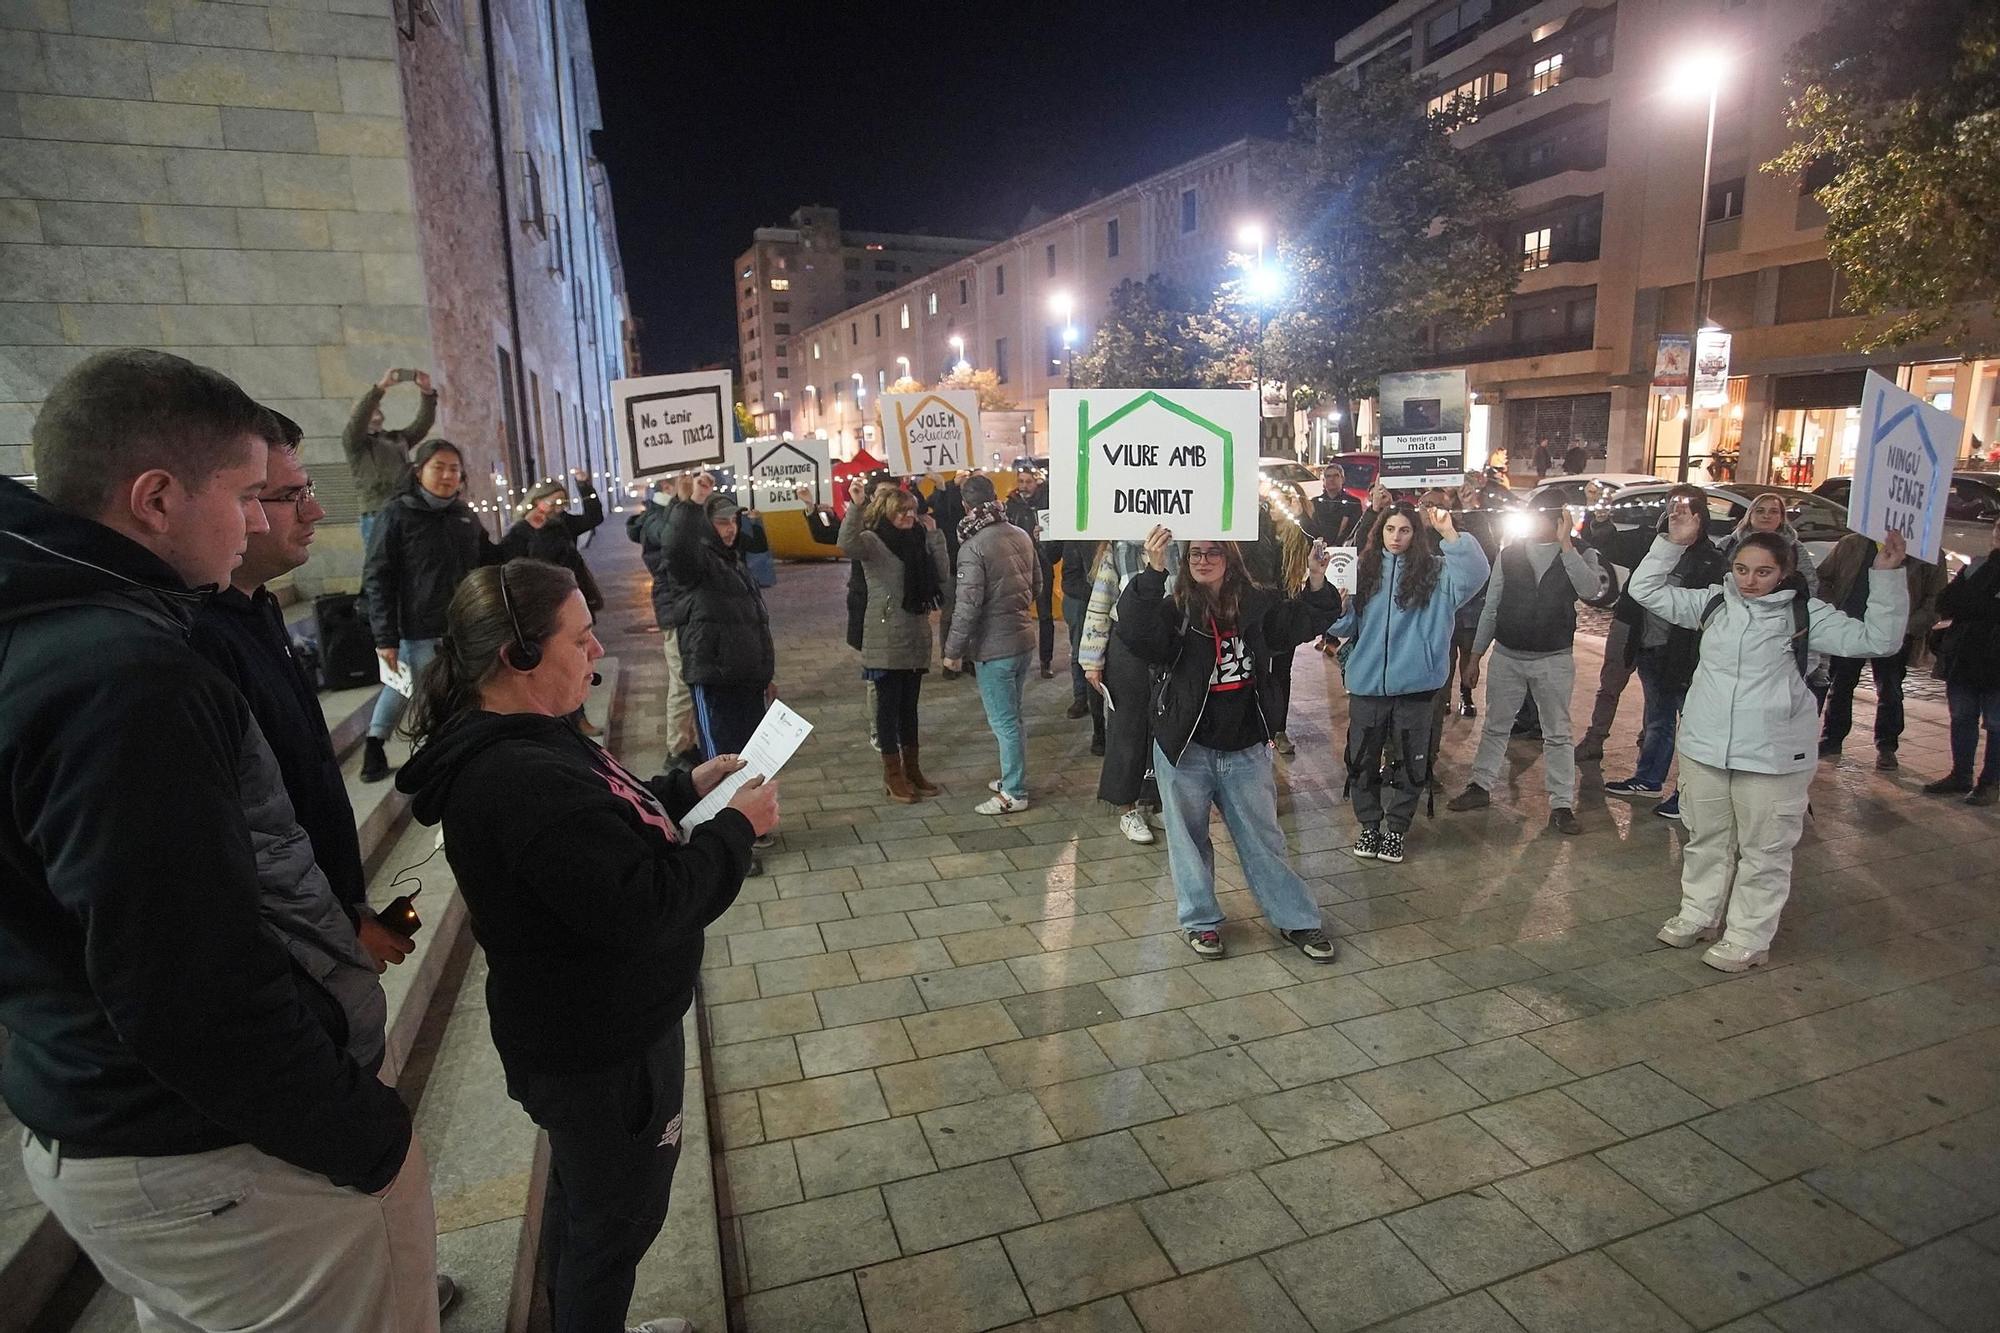 Galeria d'imatges: Flashmob a Girona per les persones sense llar